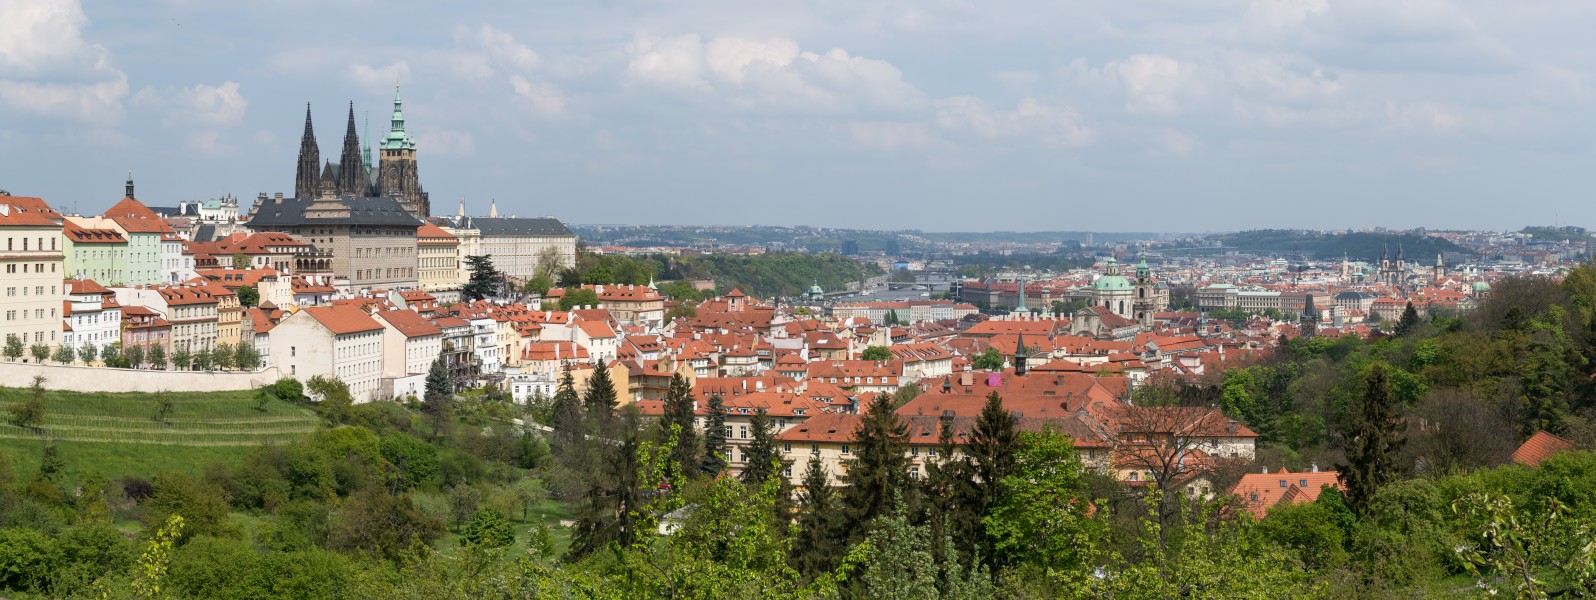 Praha Panorama from Petřín 20170430